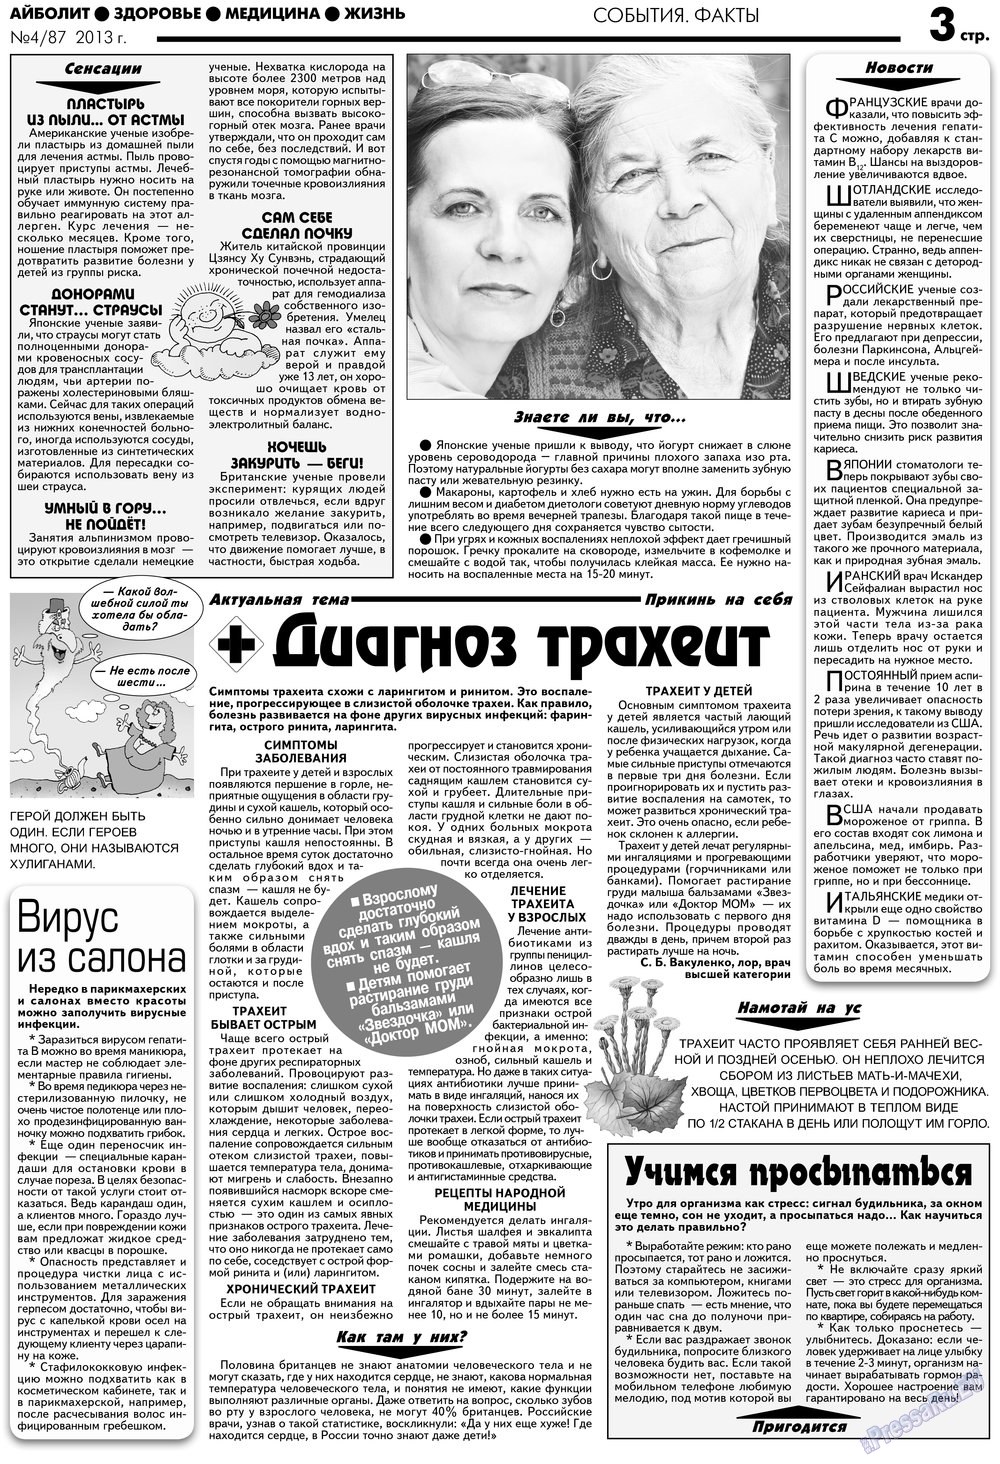 АйБолит, газета. 2013 №4 стр.3